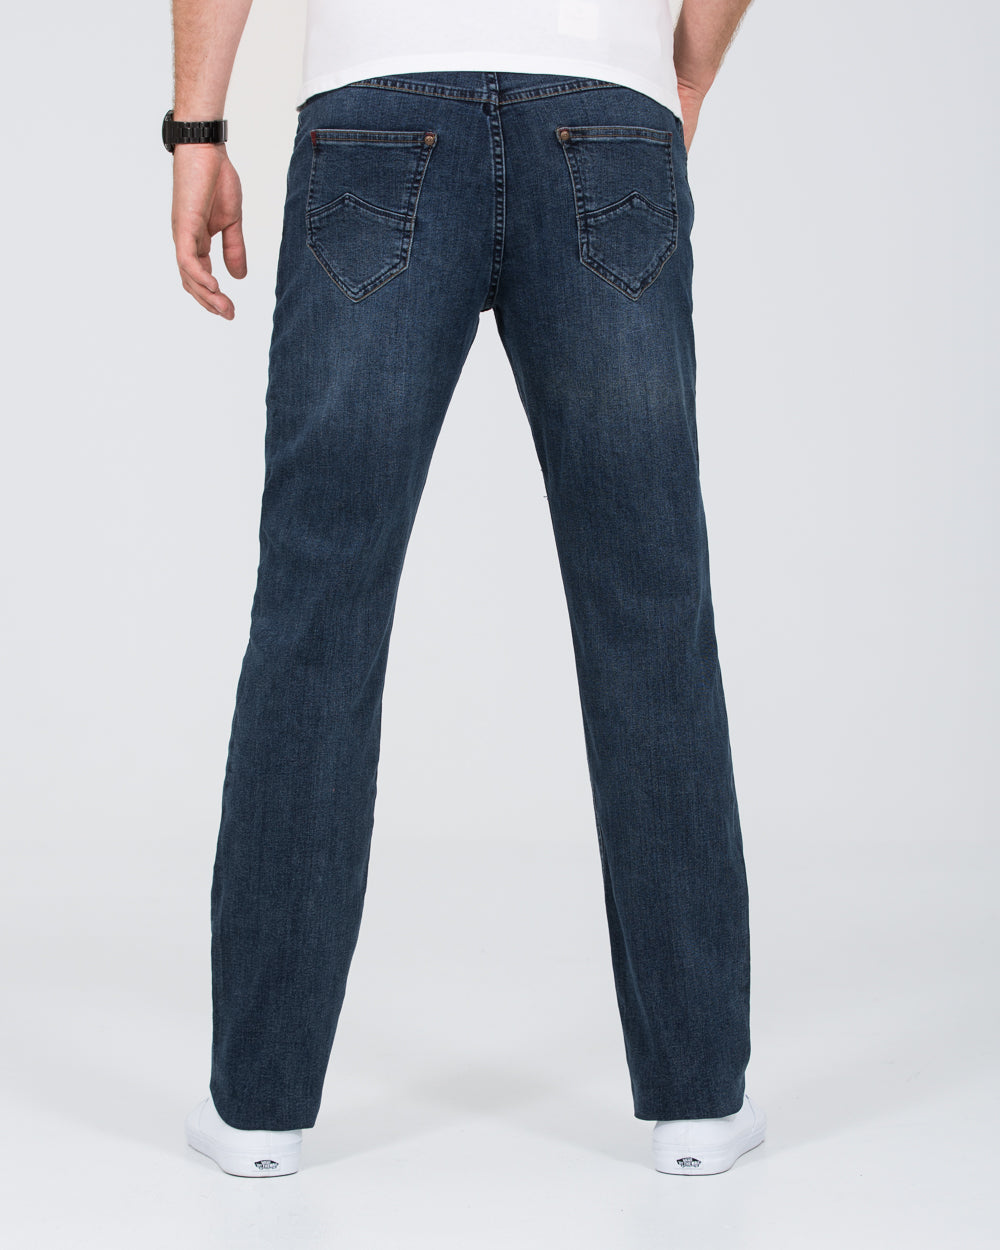 Mish Mash Outlander Tall Jeans (blue/black)